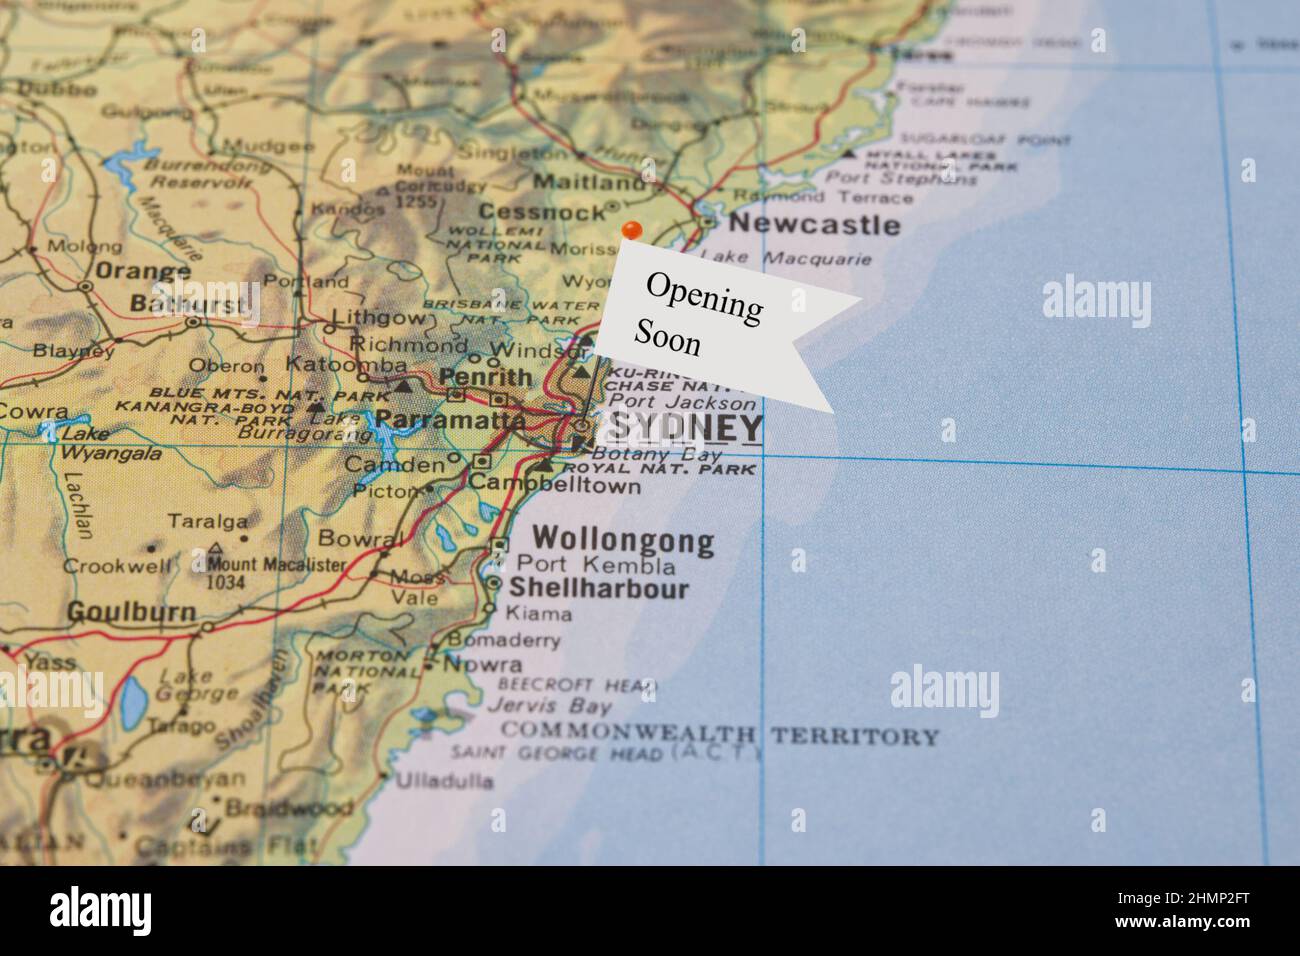 Eine Nahaufnahme einer kleinen Flagge mit dem Satz Opening Soon an einer Nadel, die in einer Illustration von Sydney Australia in einem Atlas platziert wurde Stockfoto